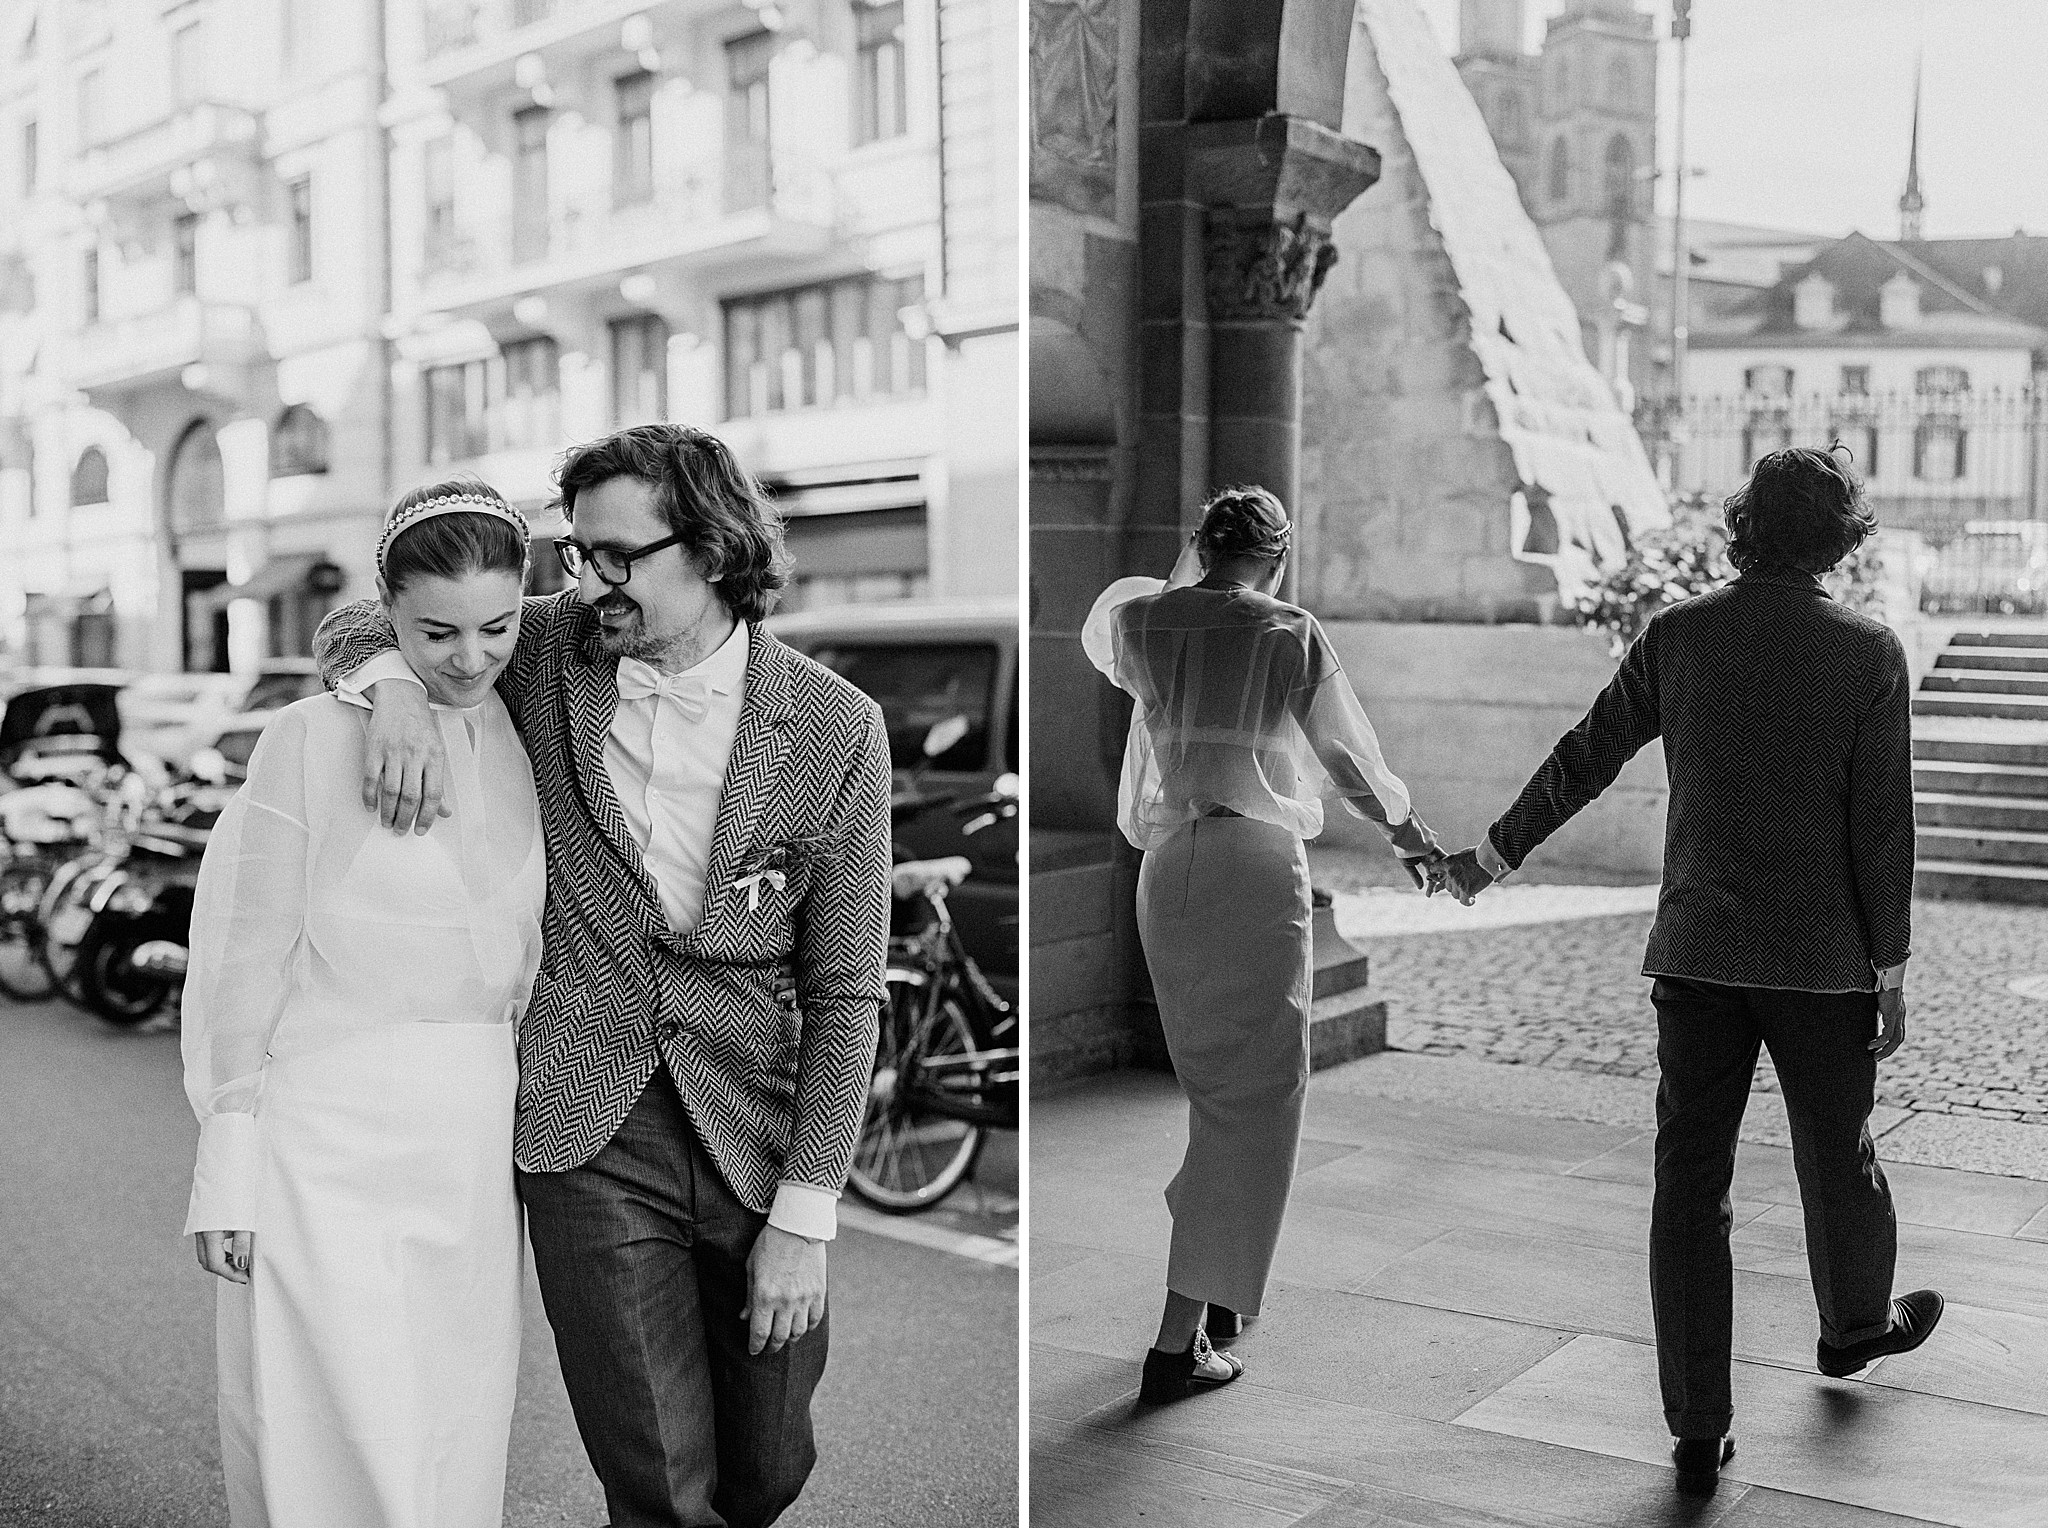 The Best Wedding Venues in Zurich - Caroline Dyer-Smith